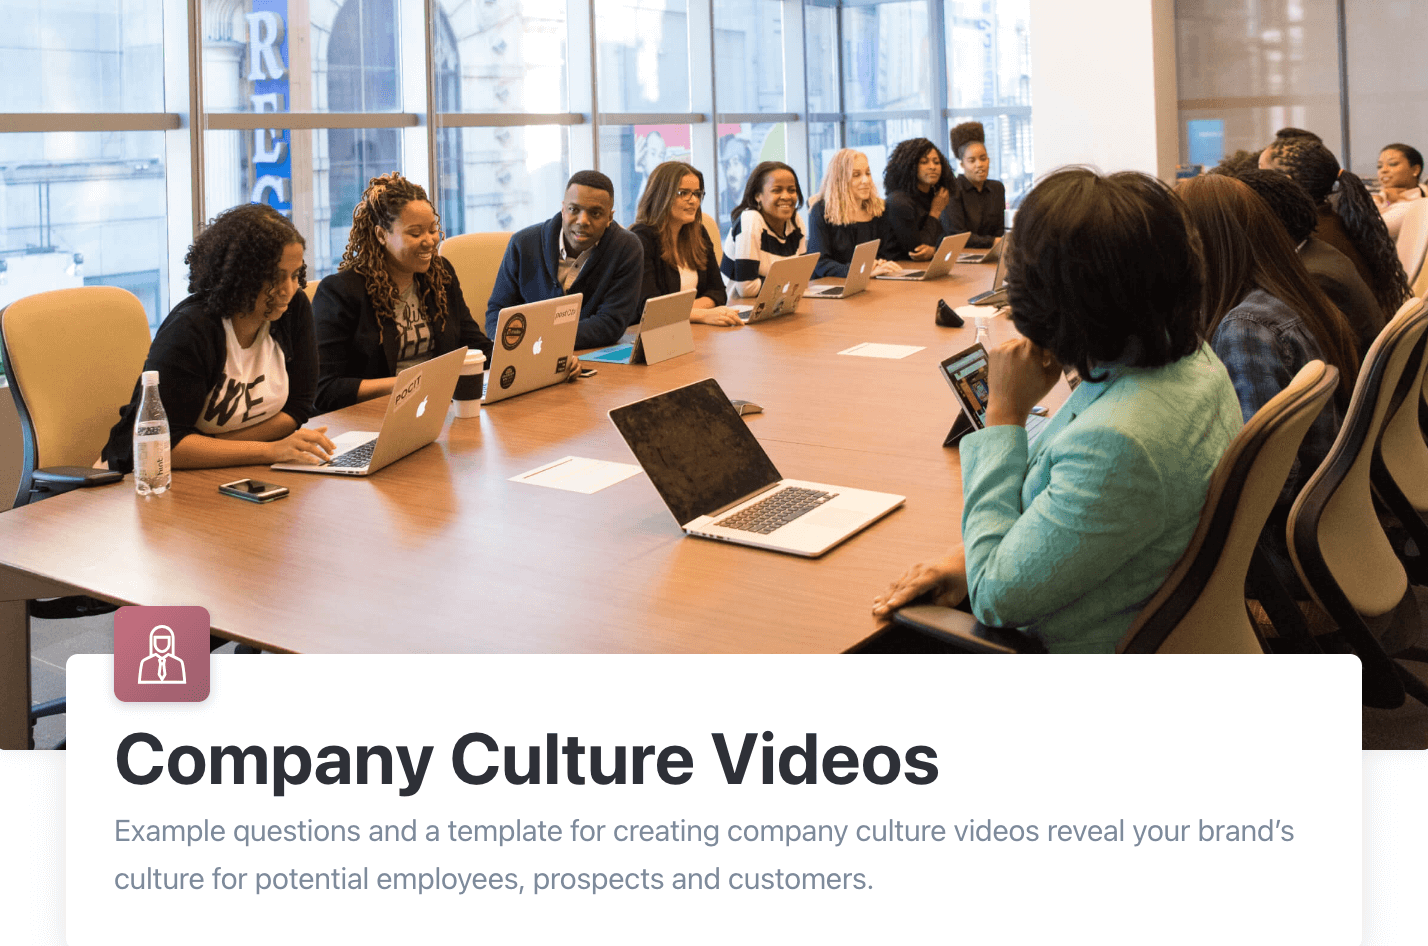 Company culture videos. 